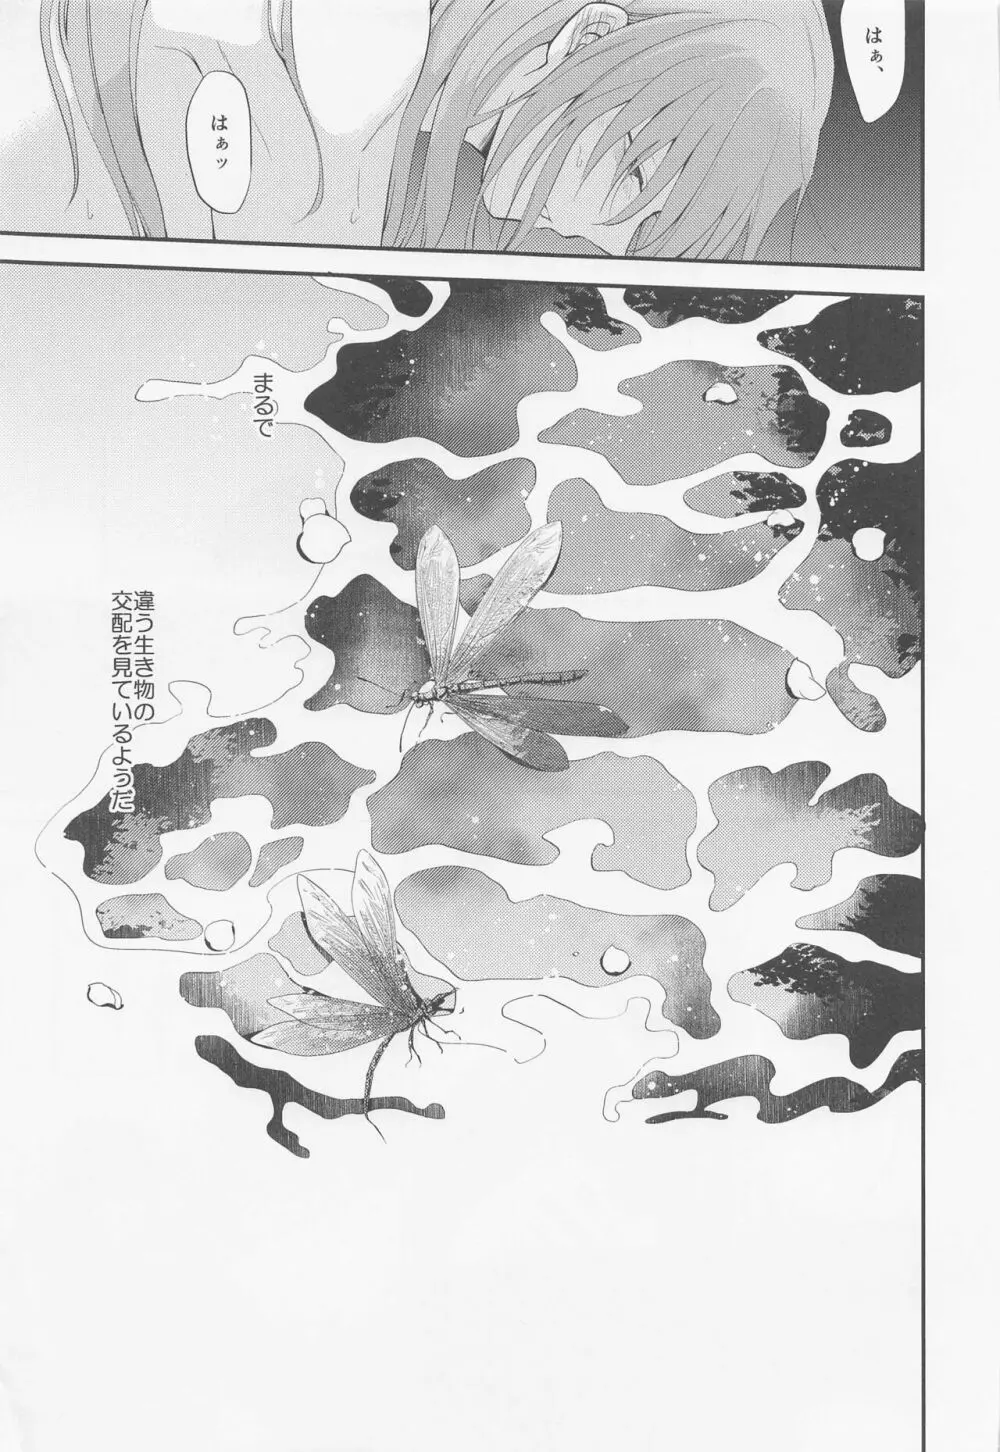 桜屋敷書庵の桜の樹の下には死体が埋まっている - page30